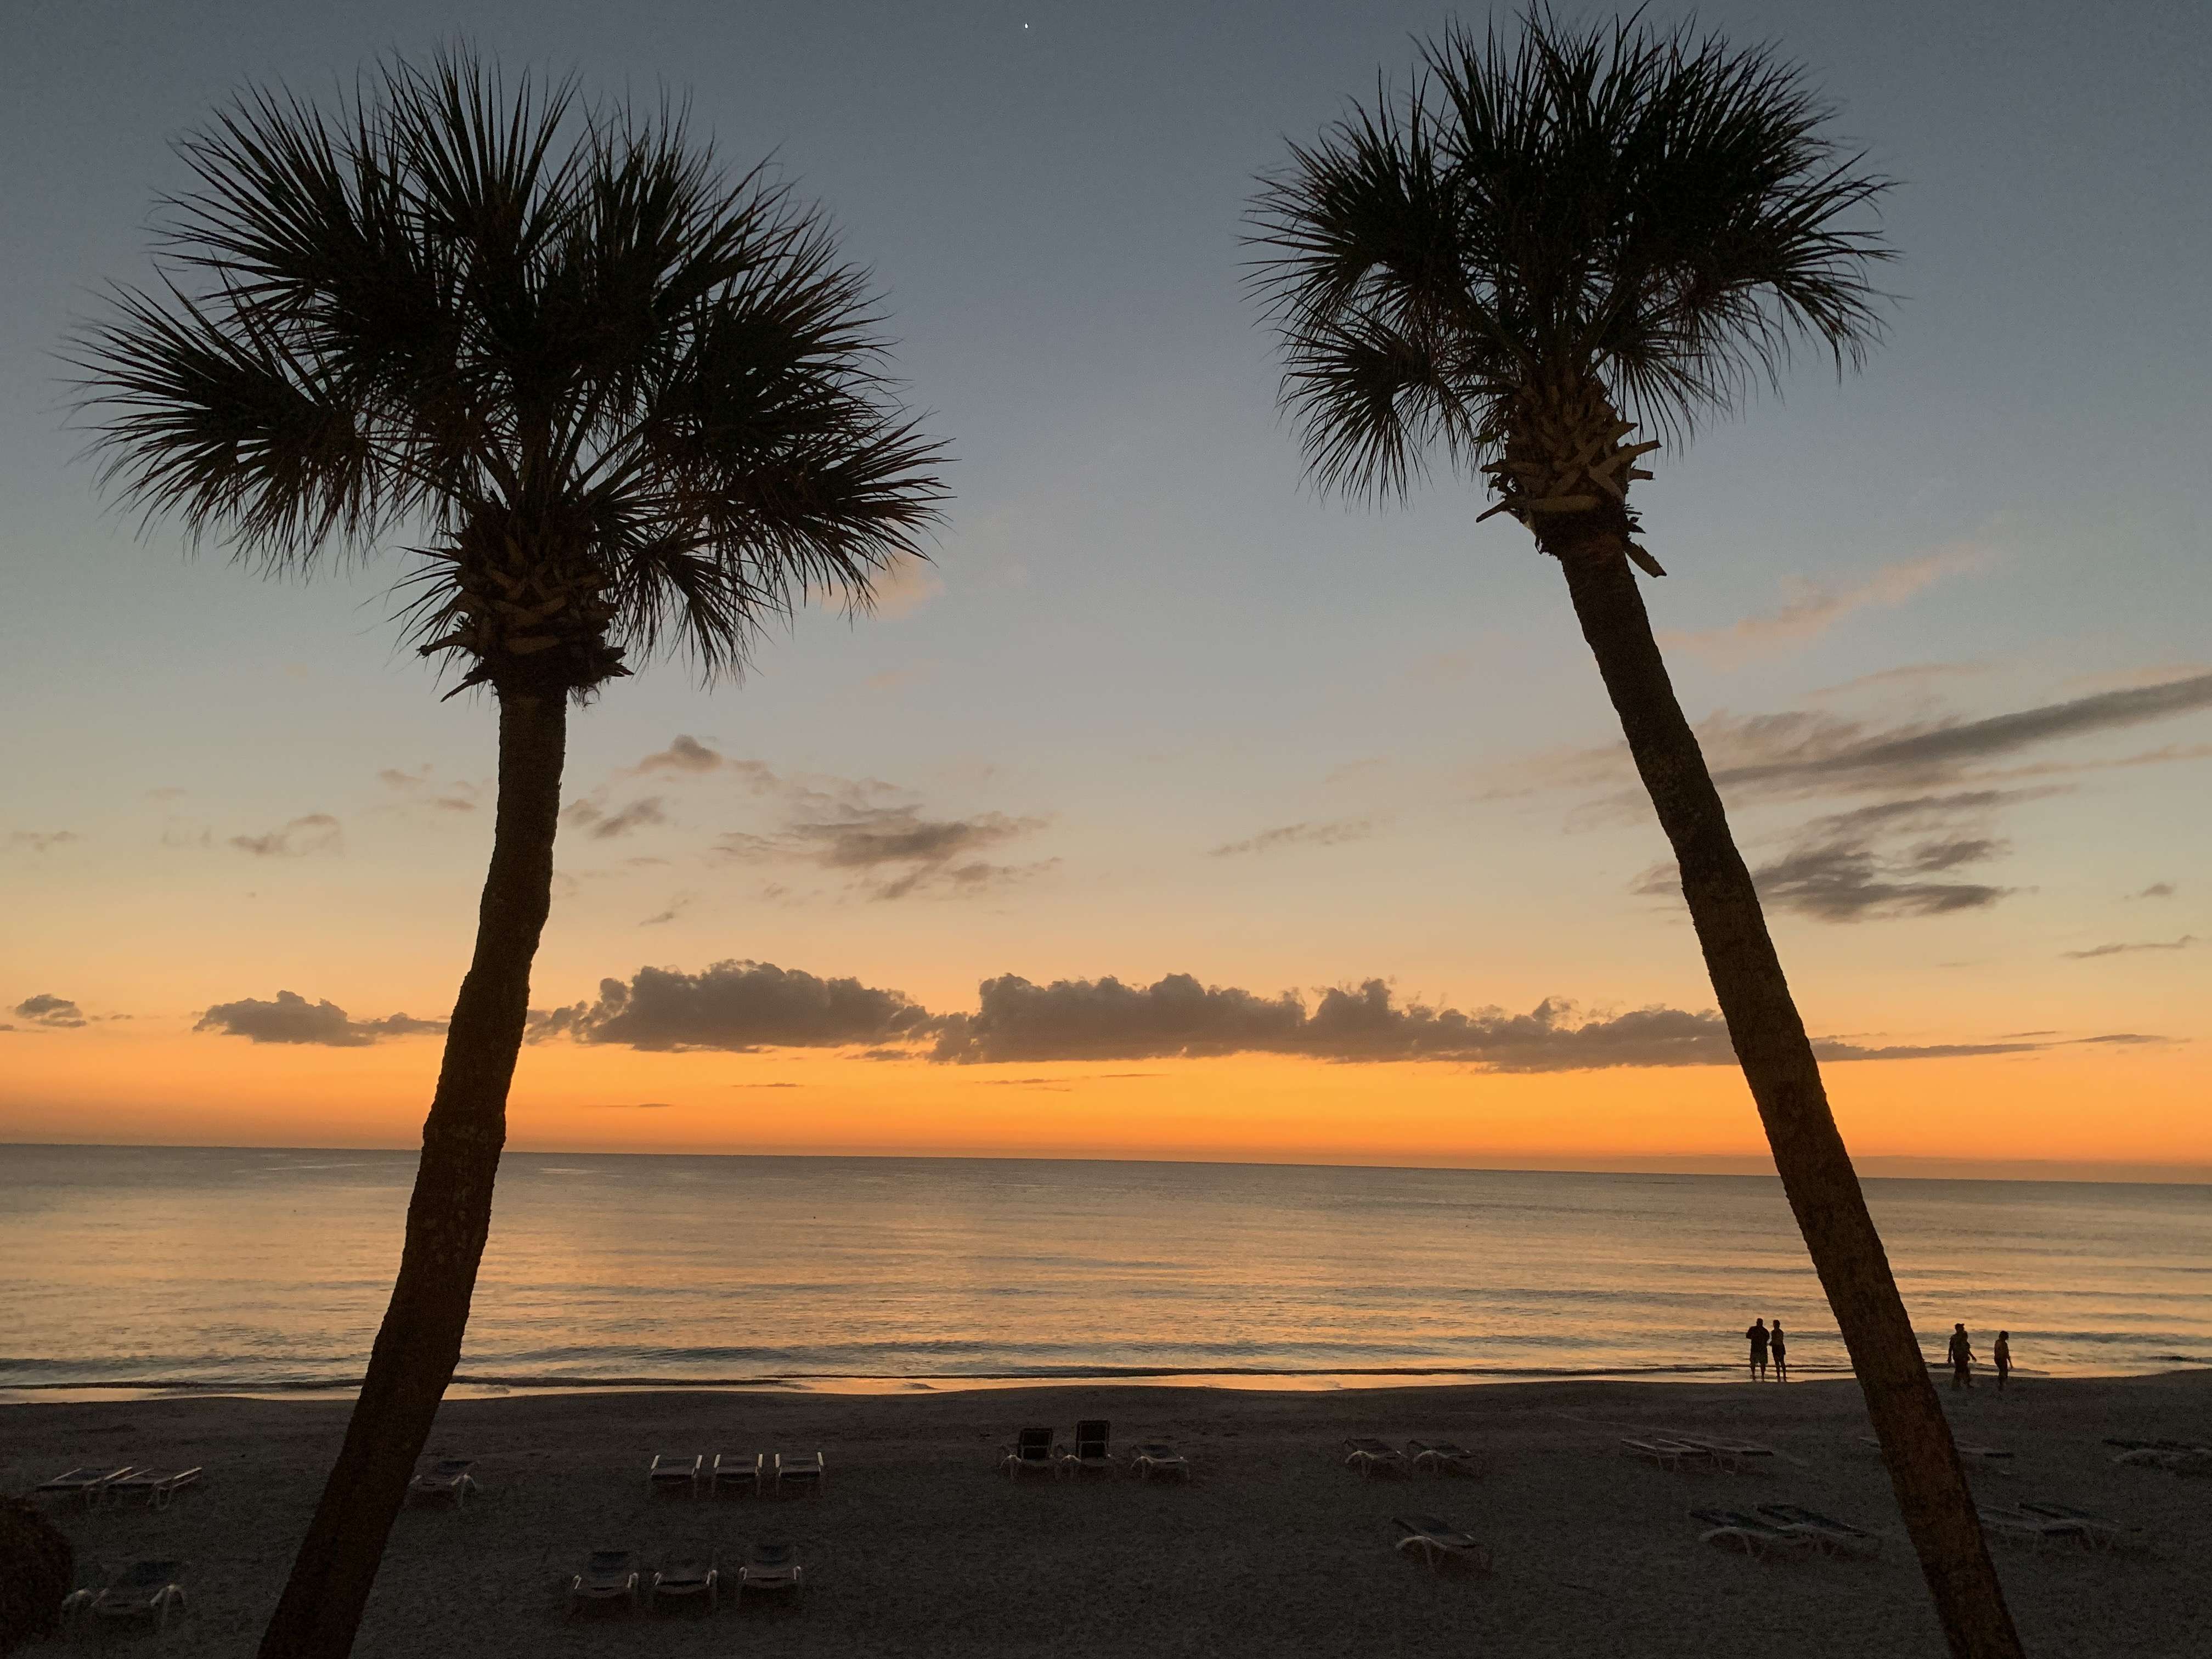 Lido Key sunset with palms